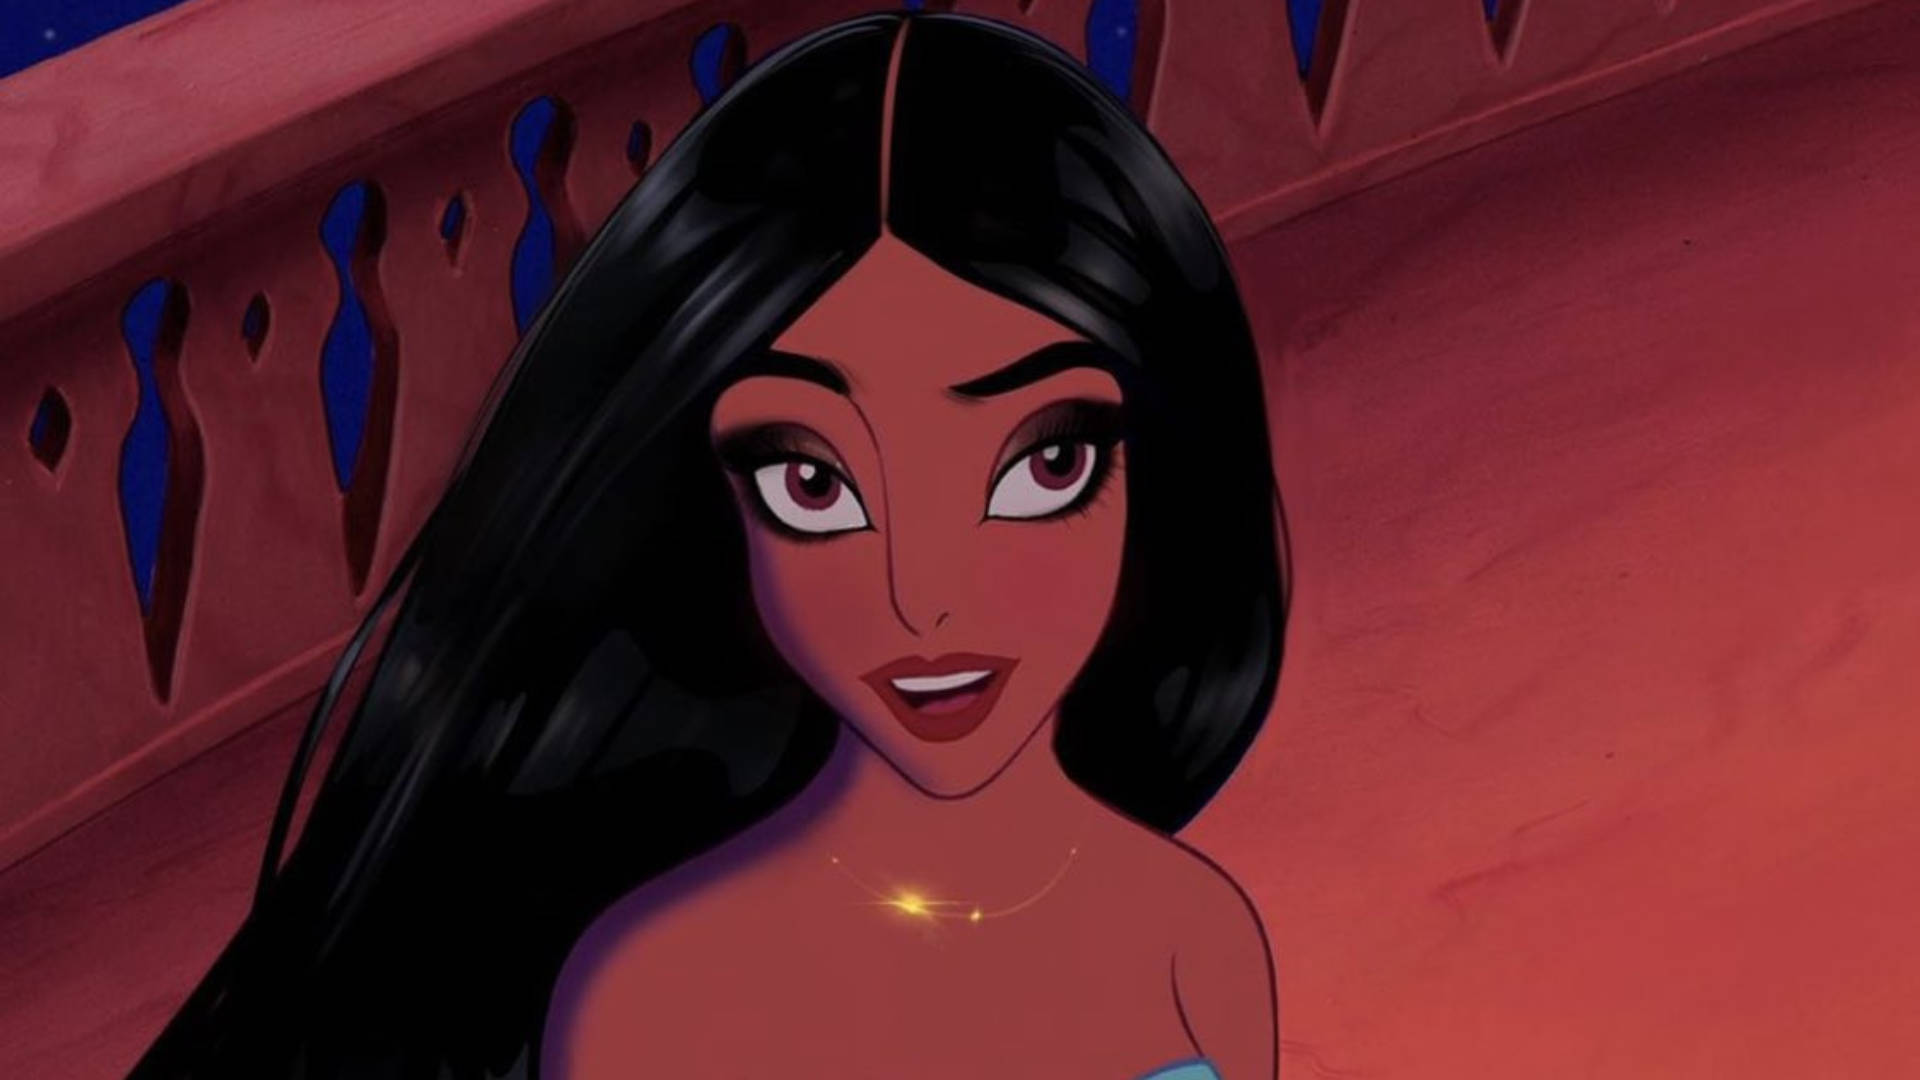 Jasmine Looking Like A Baddie Cartoon Girl Wallpaper